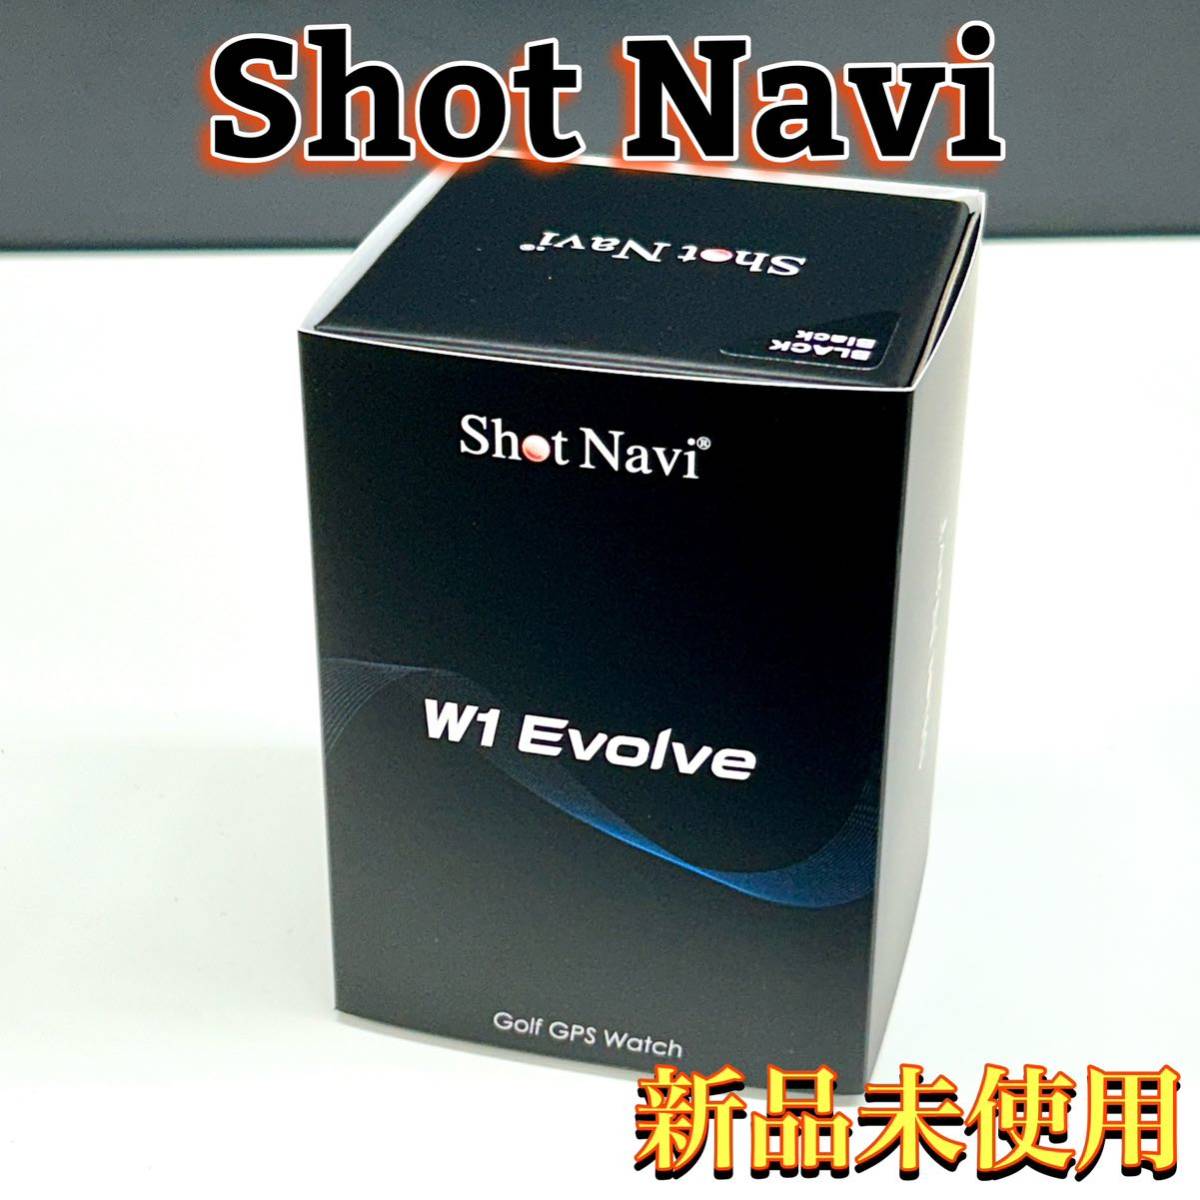 新品未使用 SHOT NAVI ショットナビ W1 EVOLVE エボルブ ブラック＆ブラック GPS ゴルフウォッチ 腕時計型 距離計 管:020904_画像1